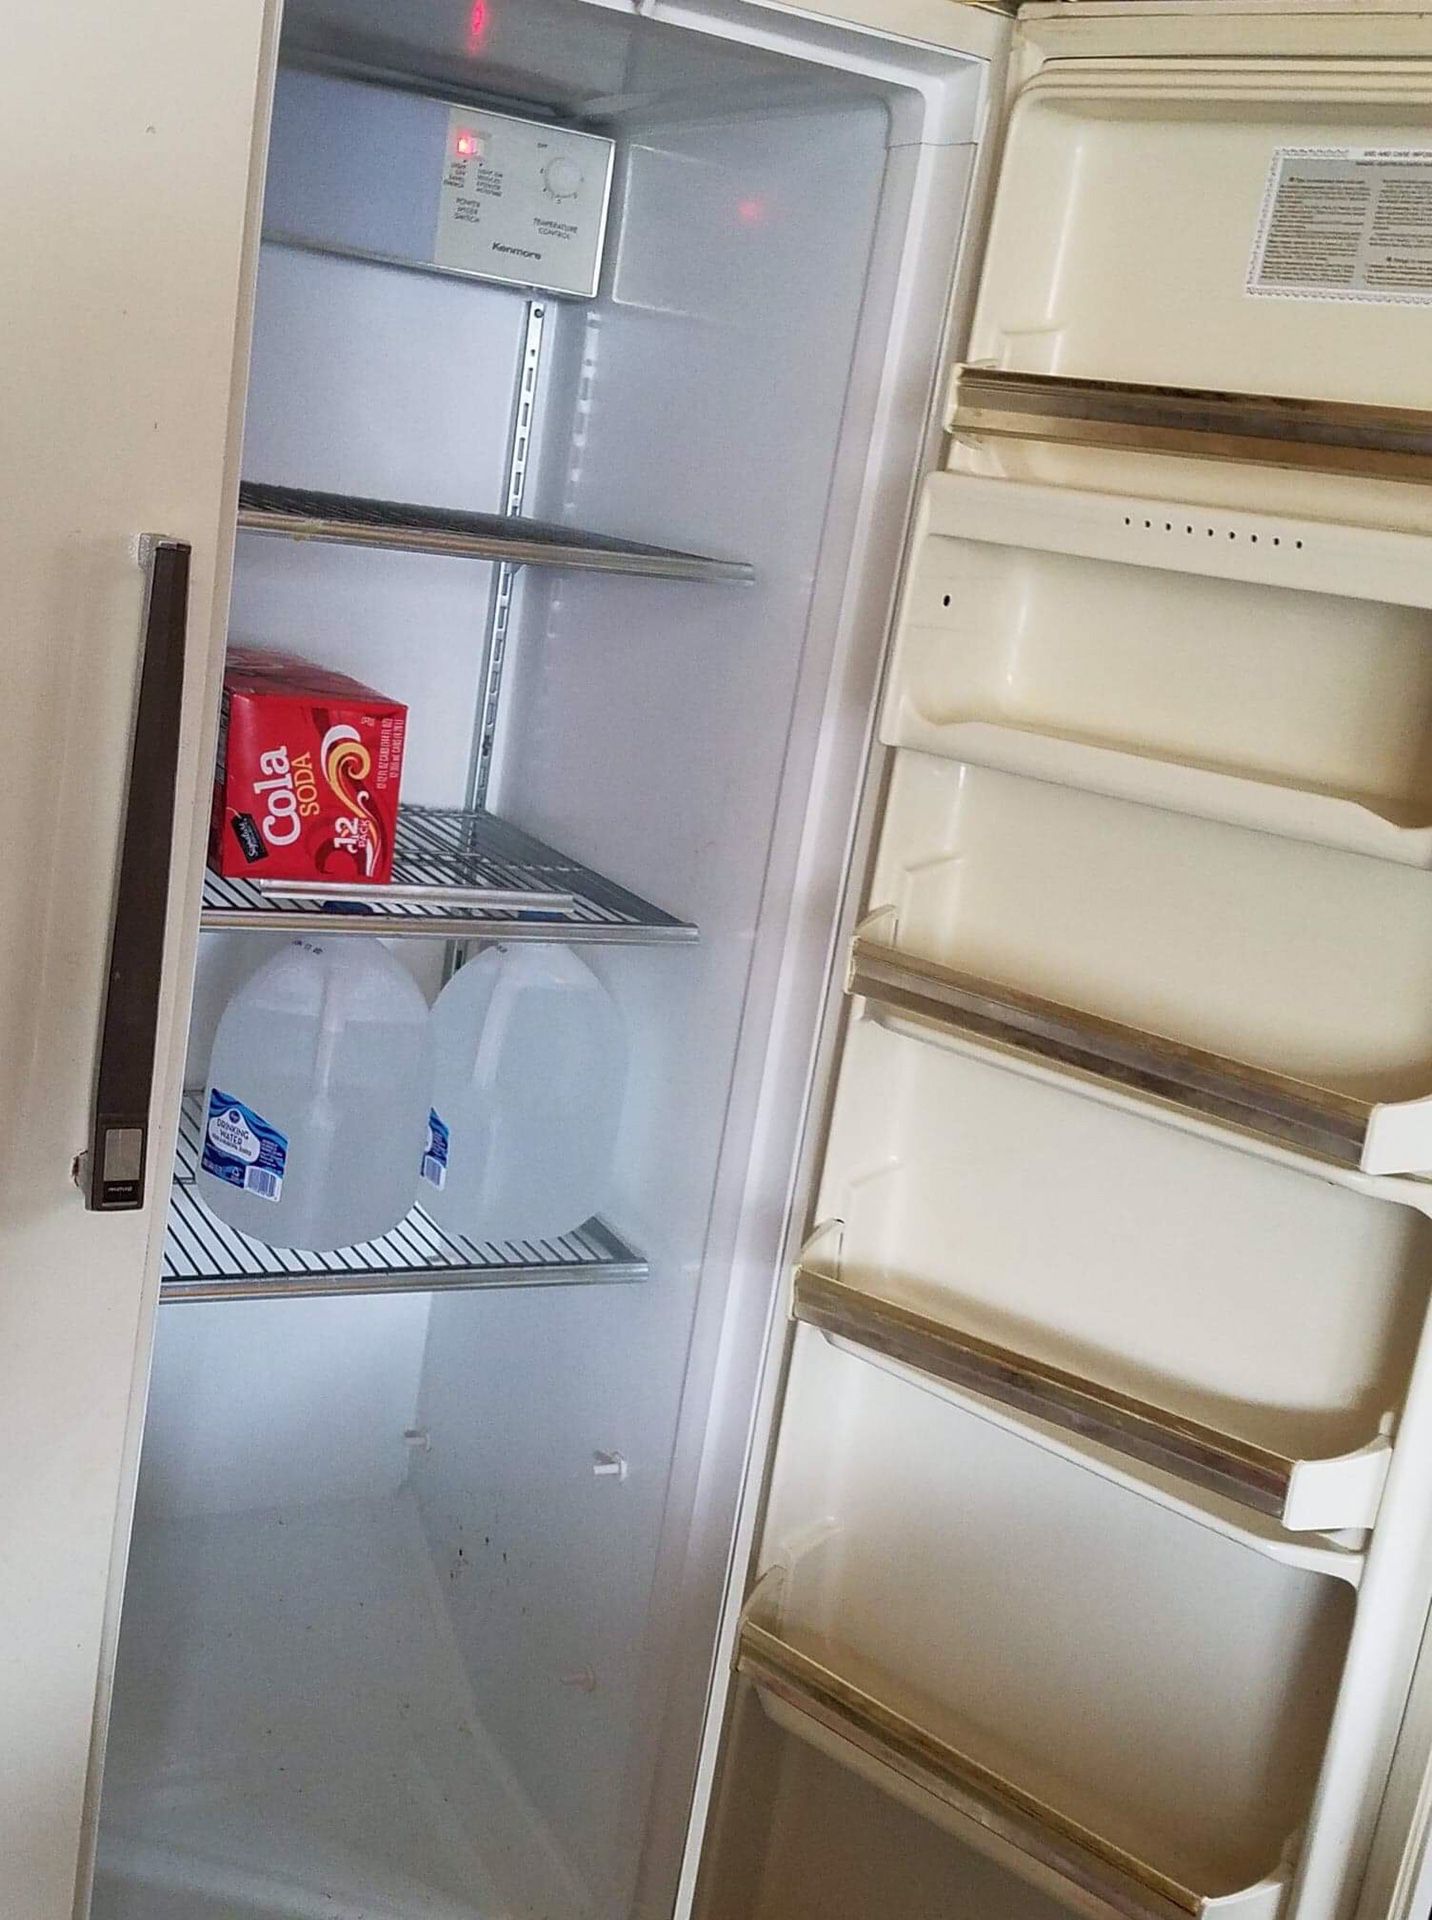 Free clean working fridge